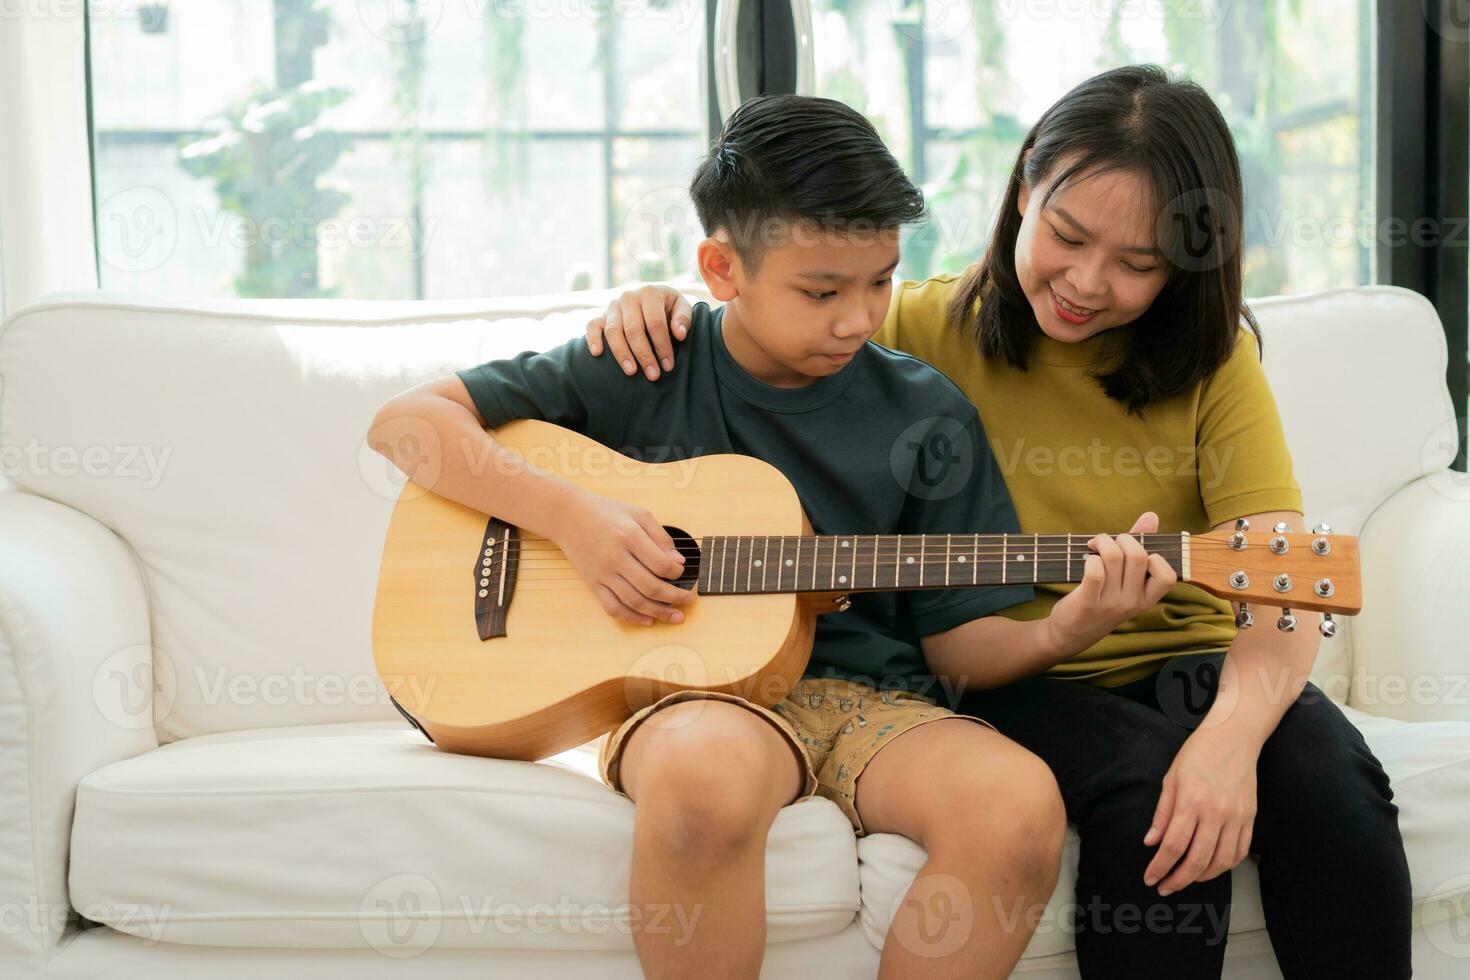 la madre asiática abraza al hijo, el niño asiático tocando la guitarra y la madre se abrazan en el sofá y se sienten apreciados y alentados. concepto de una familia feliz, aprendizaje y estilo de vida divertido, amar los lazos familiares foto